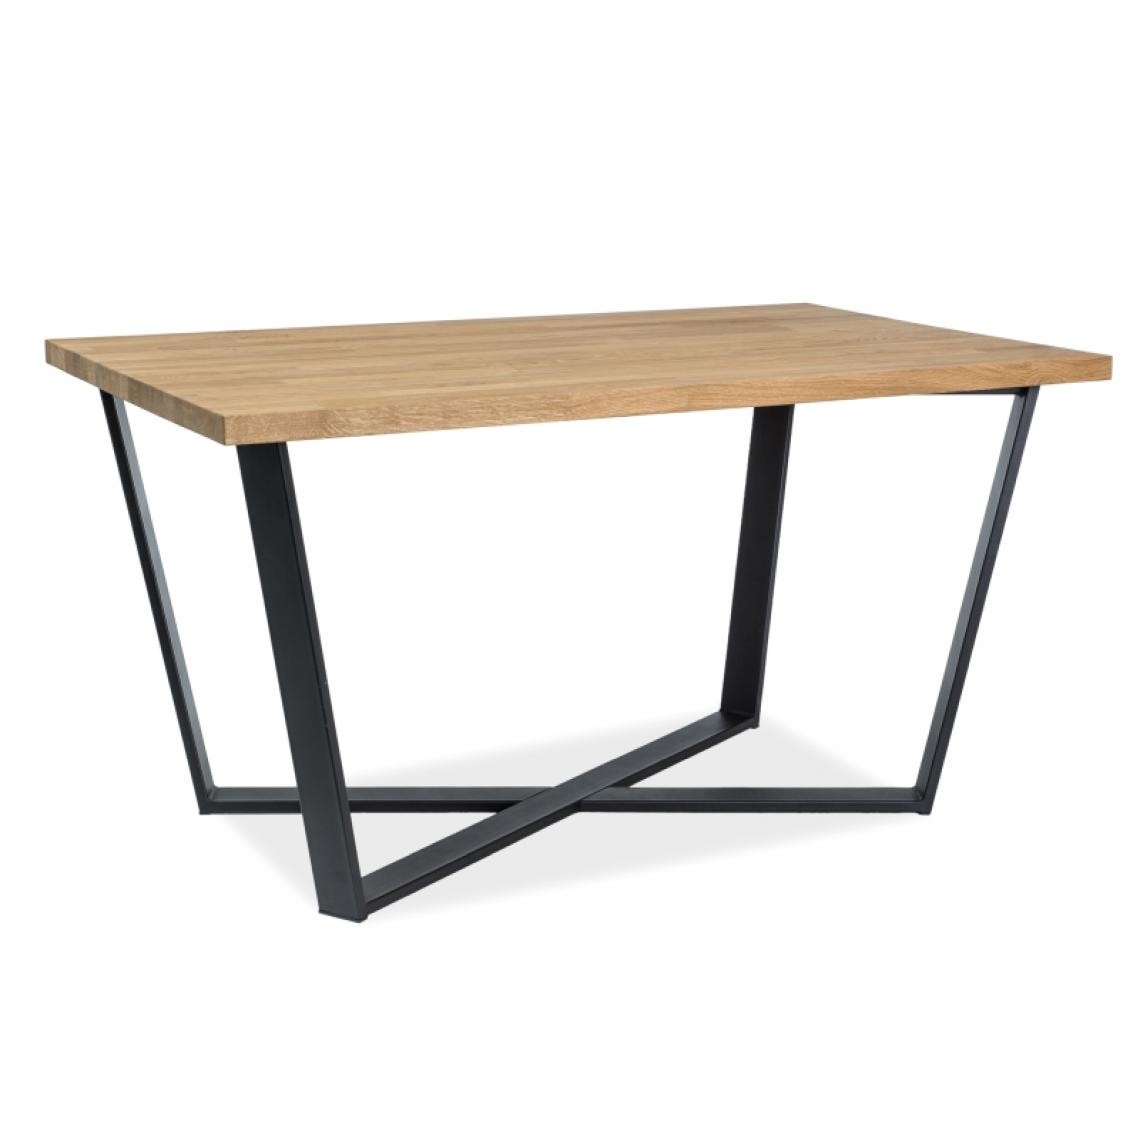 Hucoco - MARCEMMO - Table élégante de style moderne - 150X90x78 cm - Plateau en placage naturel - Piètement en métal - Chêne - Tables à manger